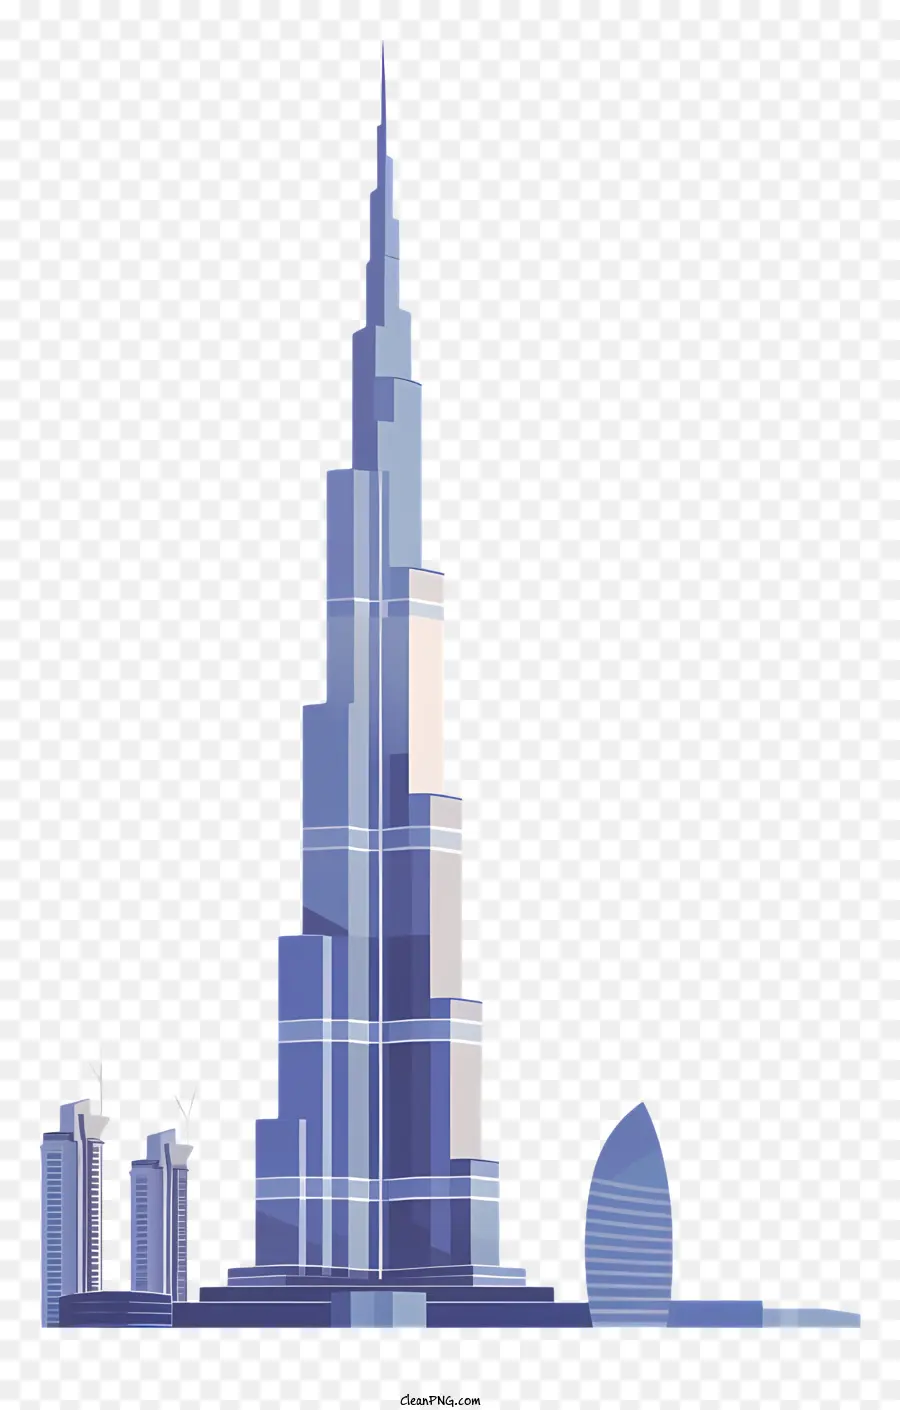 die skyline der Stadt - Burj Khalifa dominiert die Skyline der Stadt in Reflexion